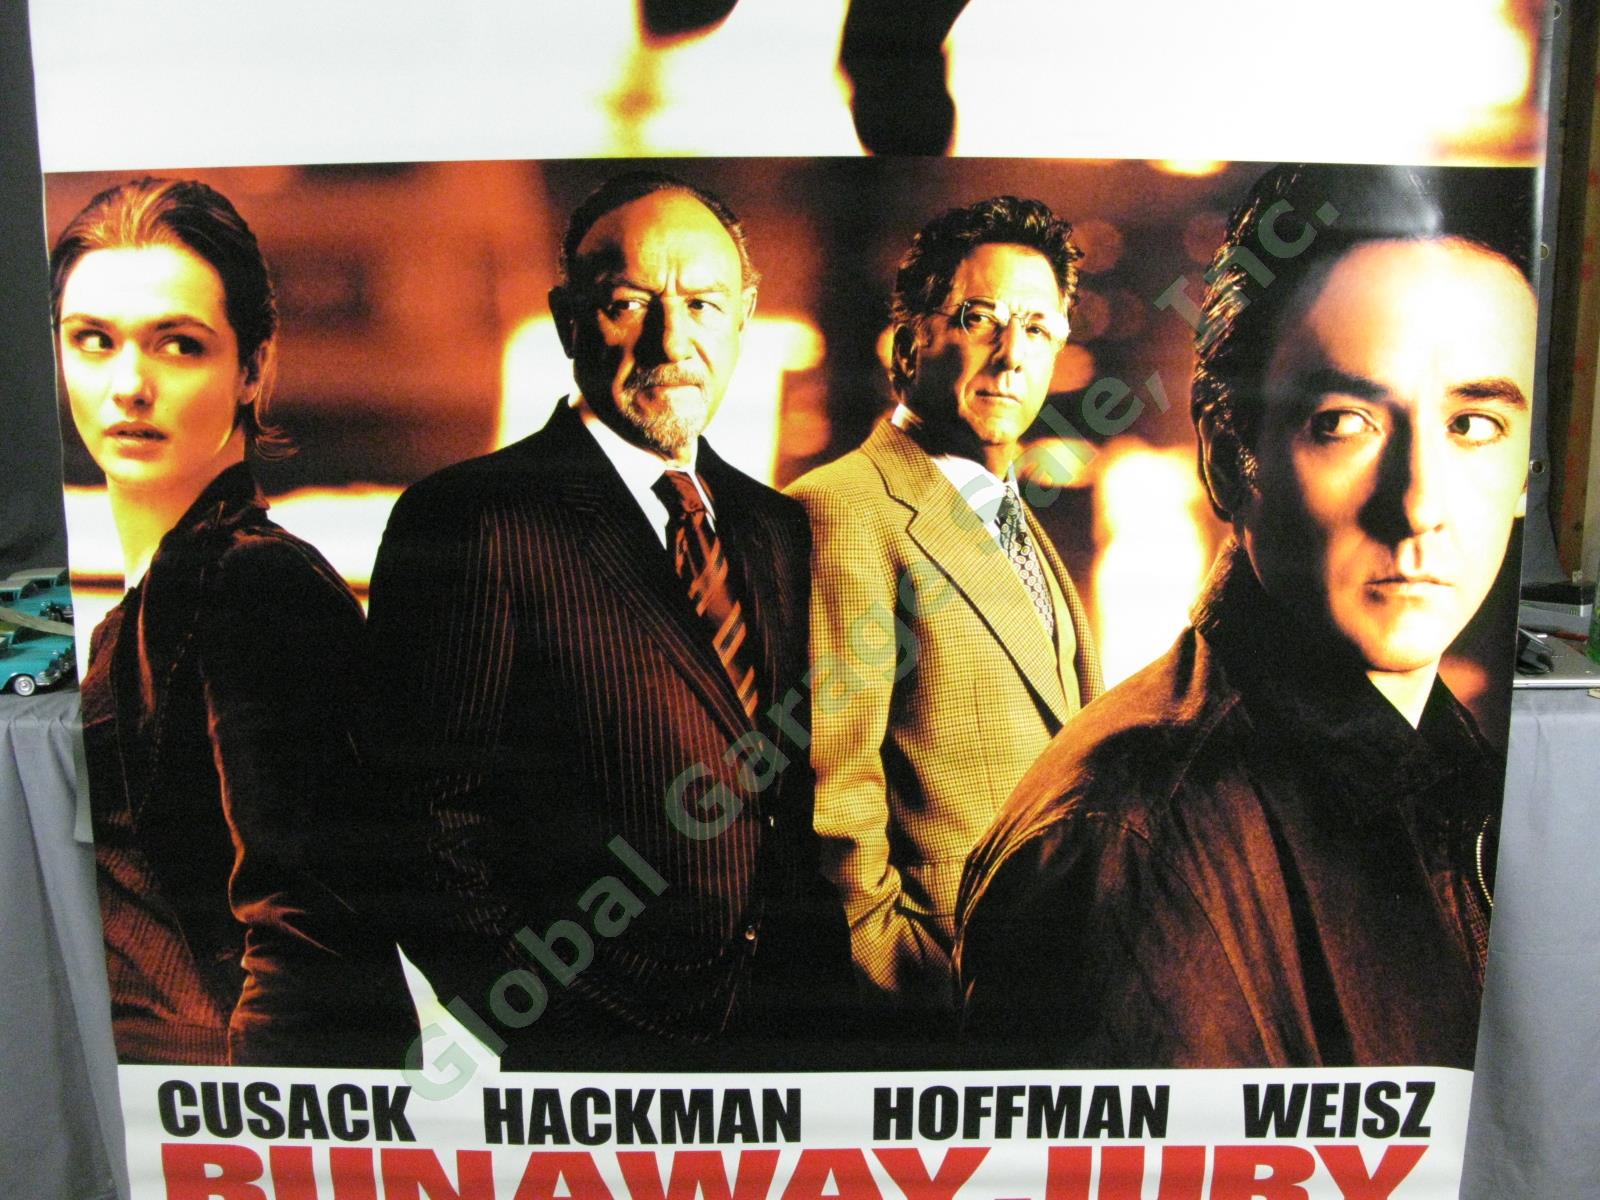 HUGE Runaway Jury Original Movie Theater Poster Banner Cusack Hackman Hoffman 1